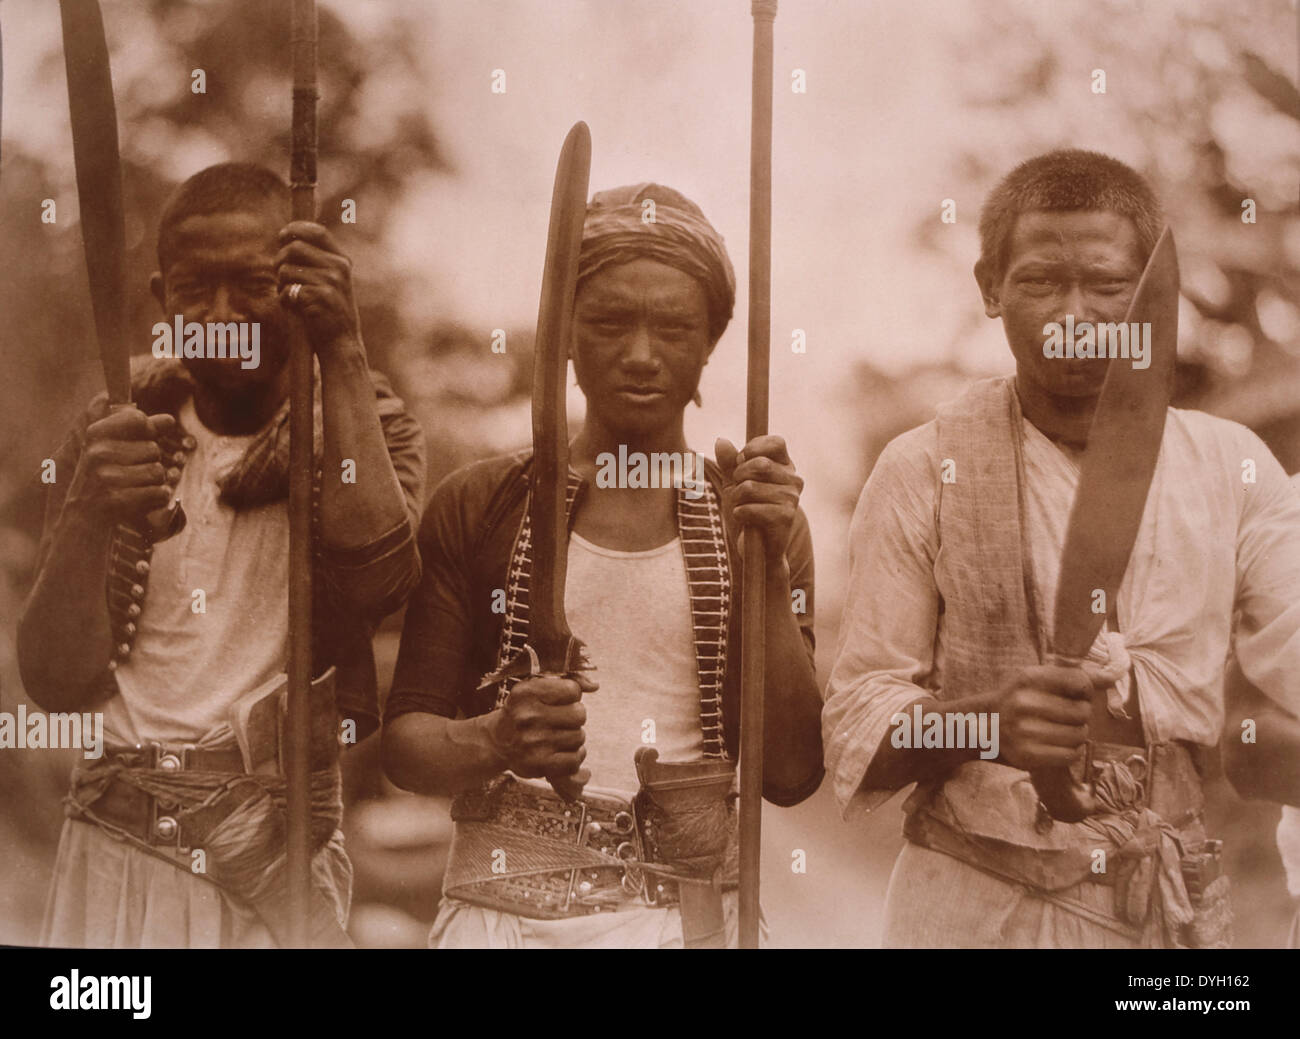 La tribu des Philippines qui ont combattu les Américains après la guerre hispano-américaine, vers 1900 Banque D'Images